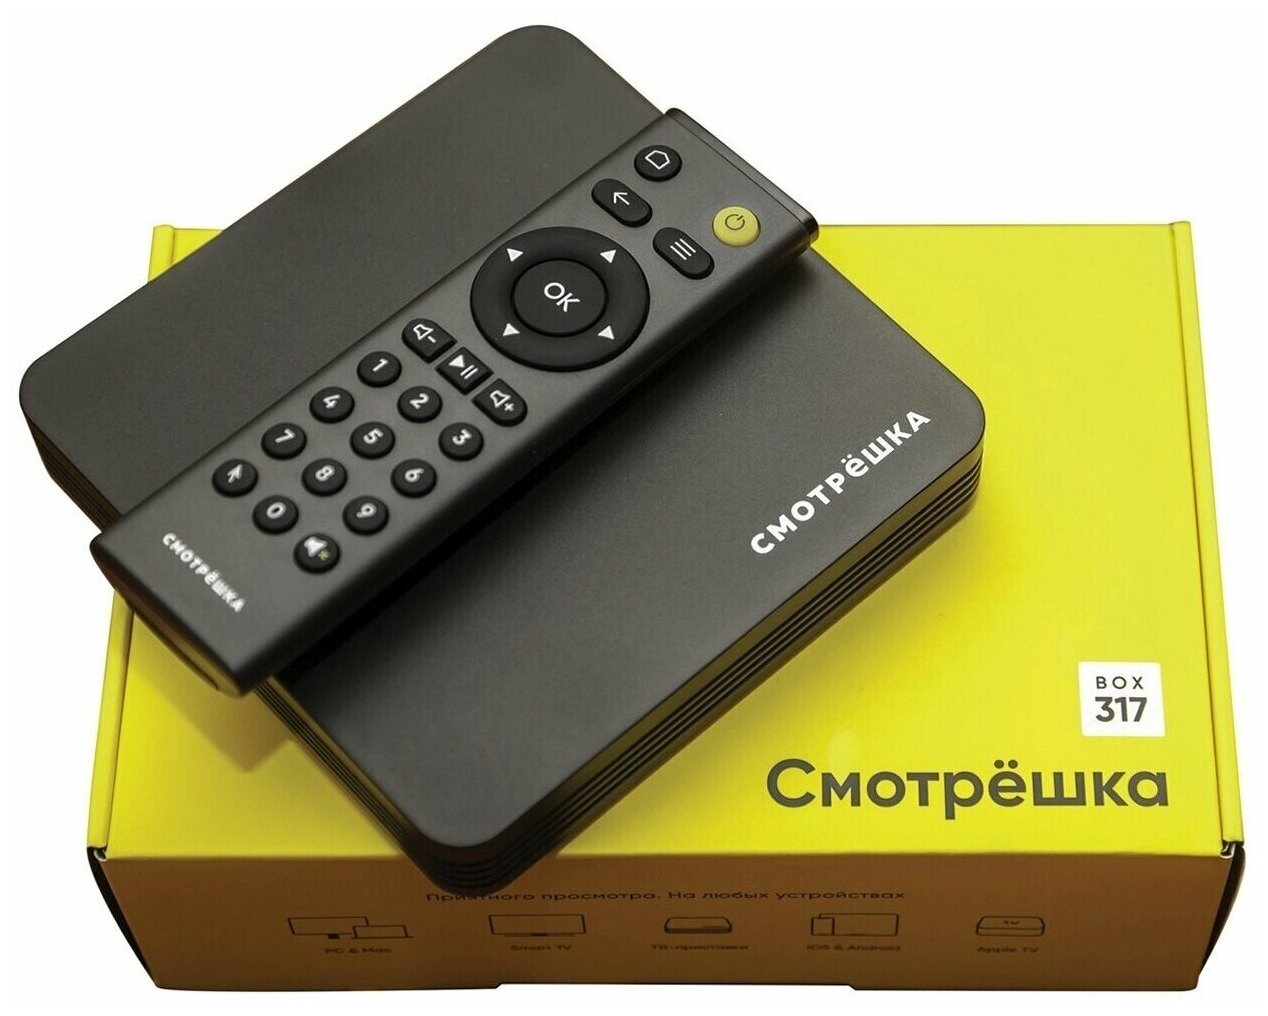 Смарт ТВ- приставка Смотрёшка Box модель 317 + подписка на ТВ и онлайн- кинотеатры — купить по выгодной цене на Яндекс.Маркете